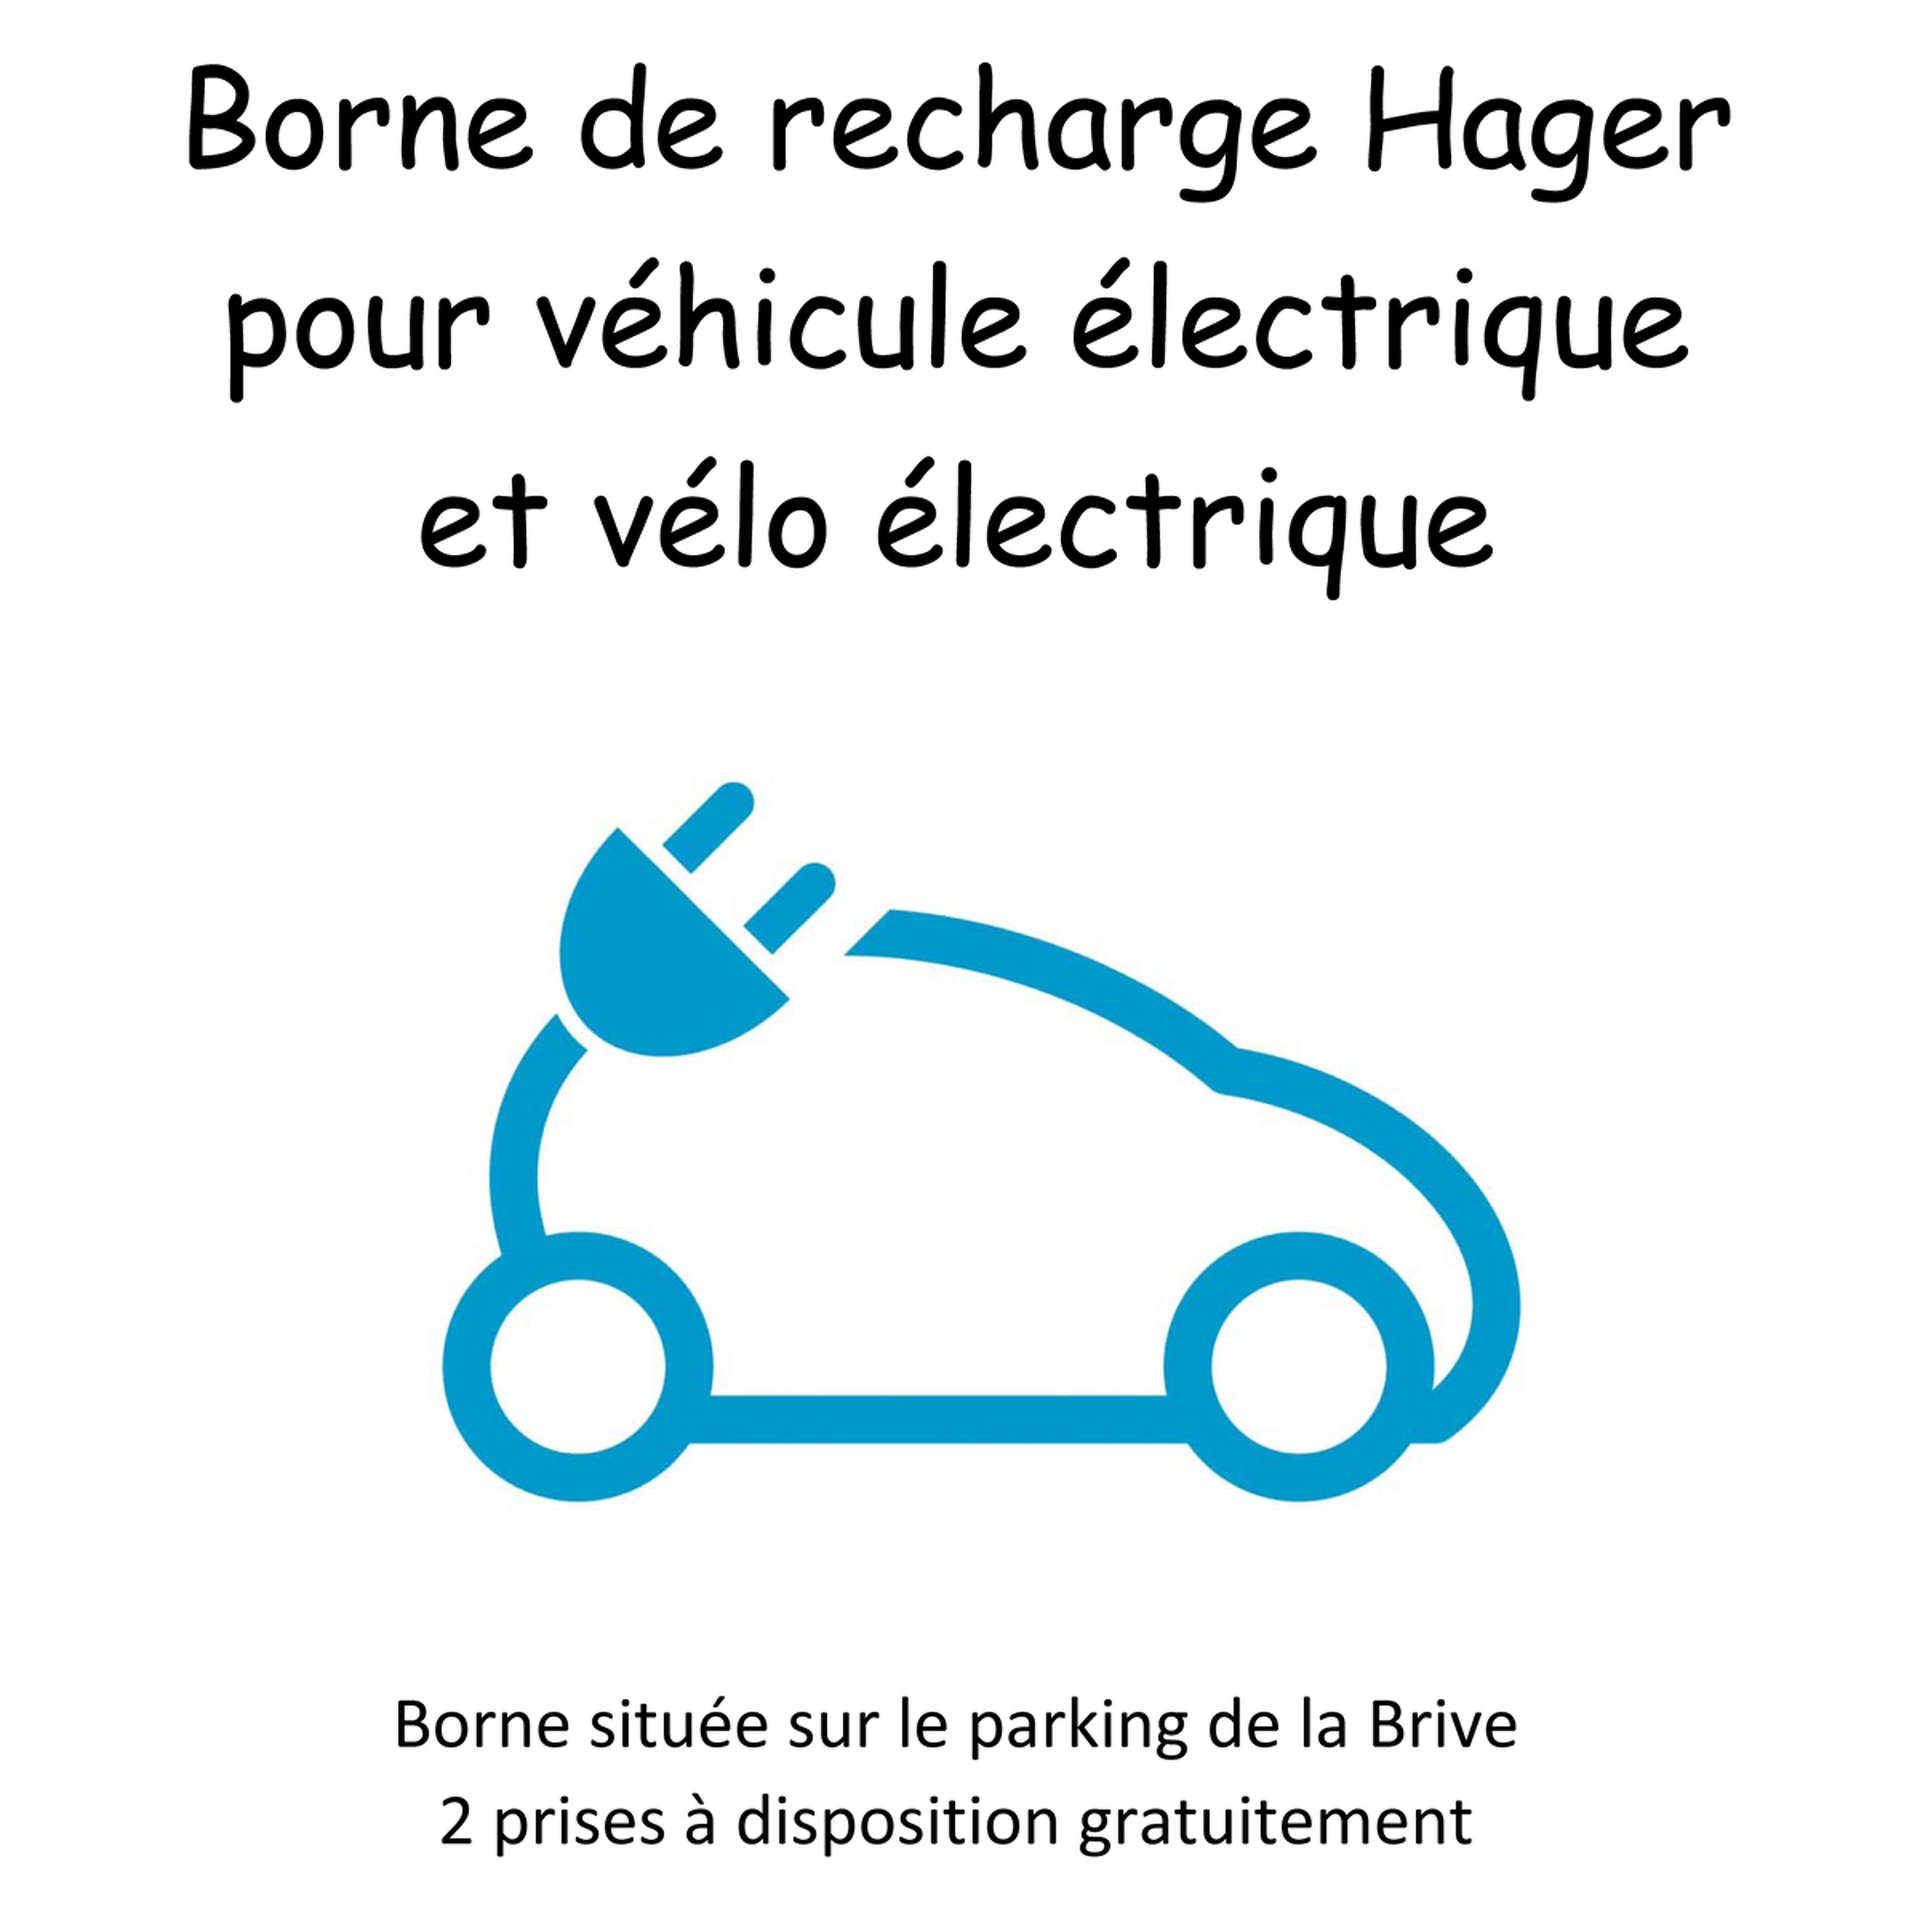 Bornes de recharge véhicules électriques (vélo et voiture)